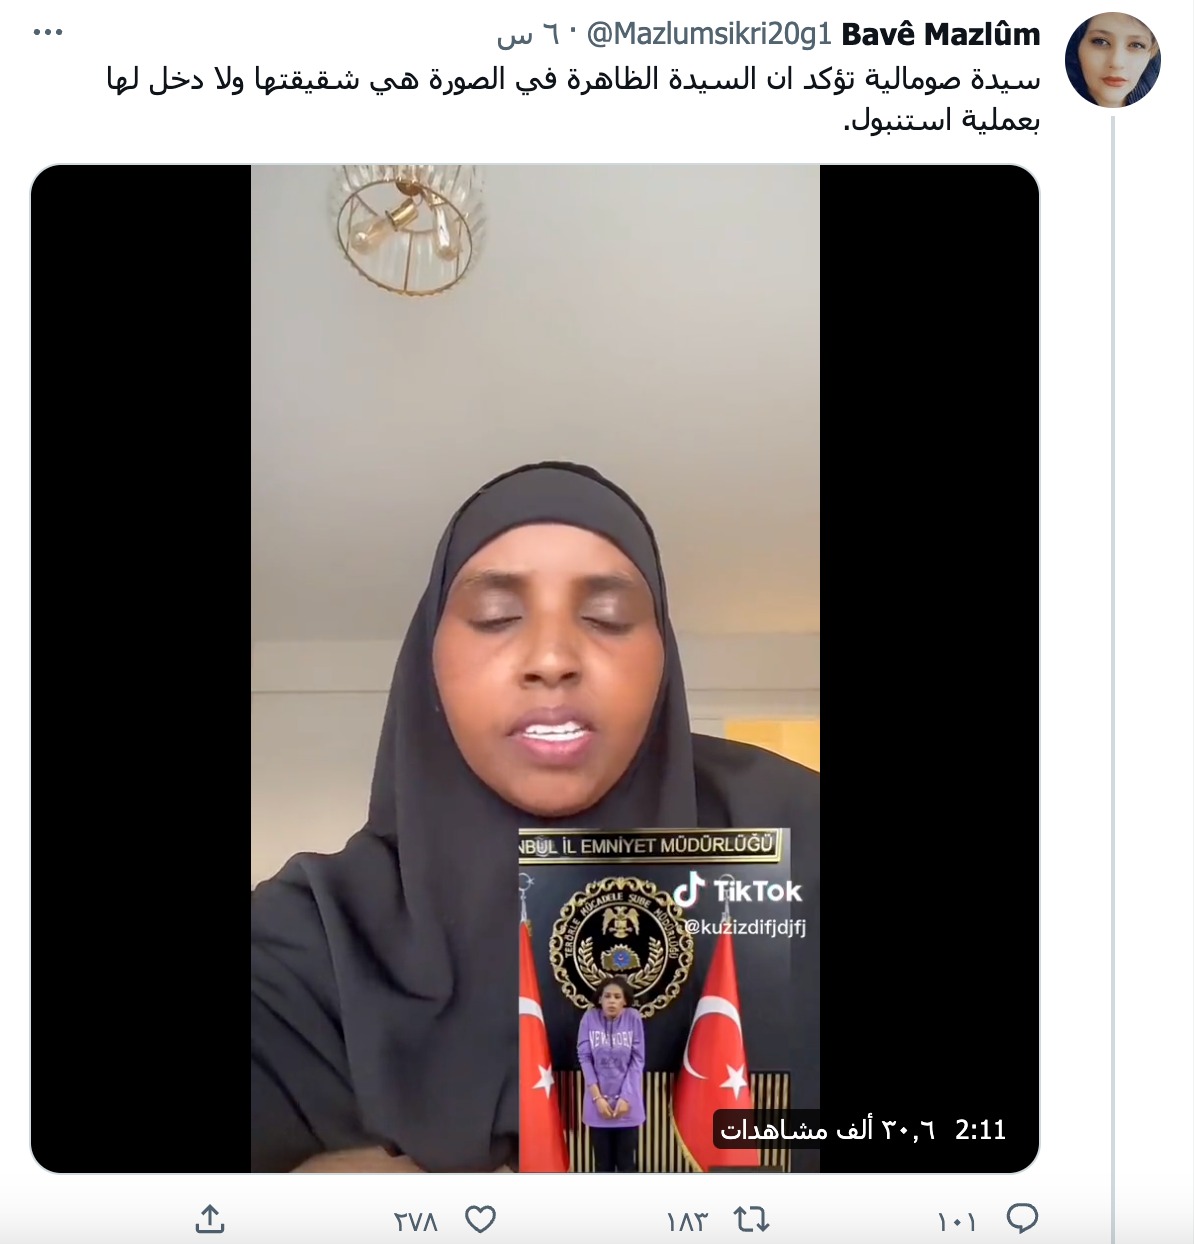 سيدة صومالية تؤكد ان السيدة الظاهرة في الصورة هي شقيقتها ولا دخل لها بعملية استنبول.